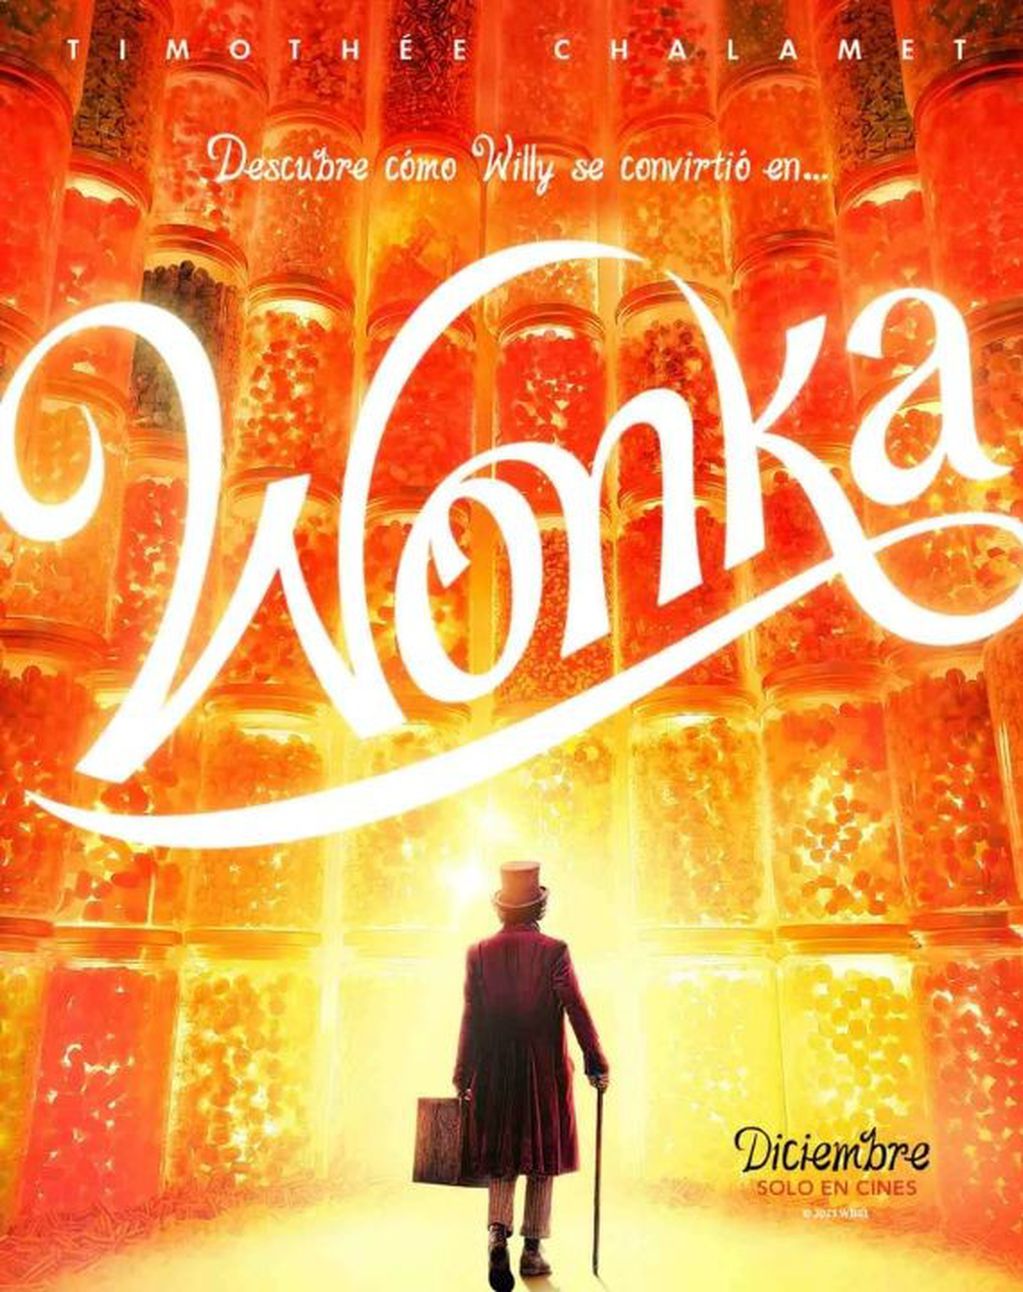 Wonka llegará al streaming.